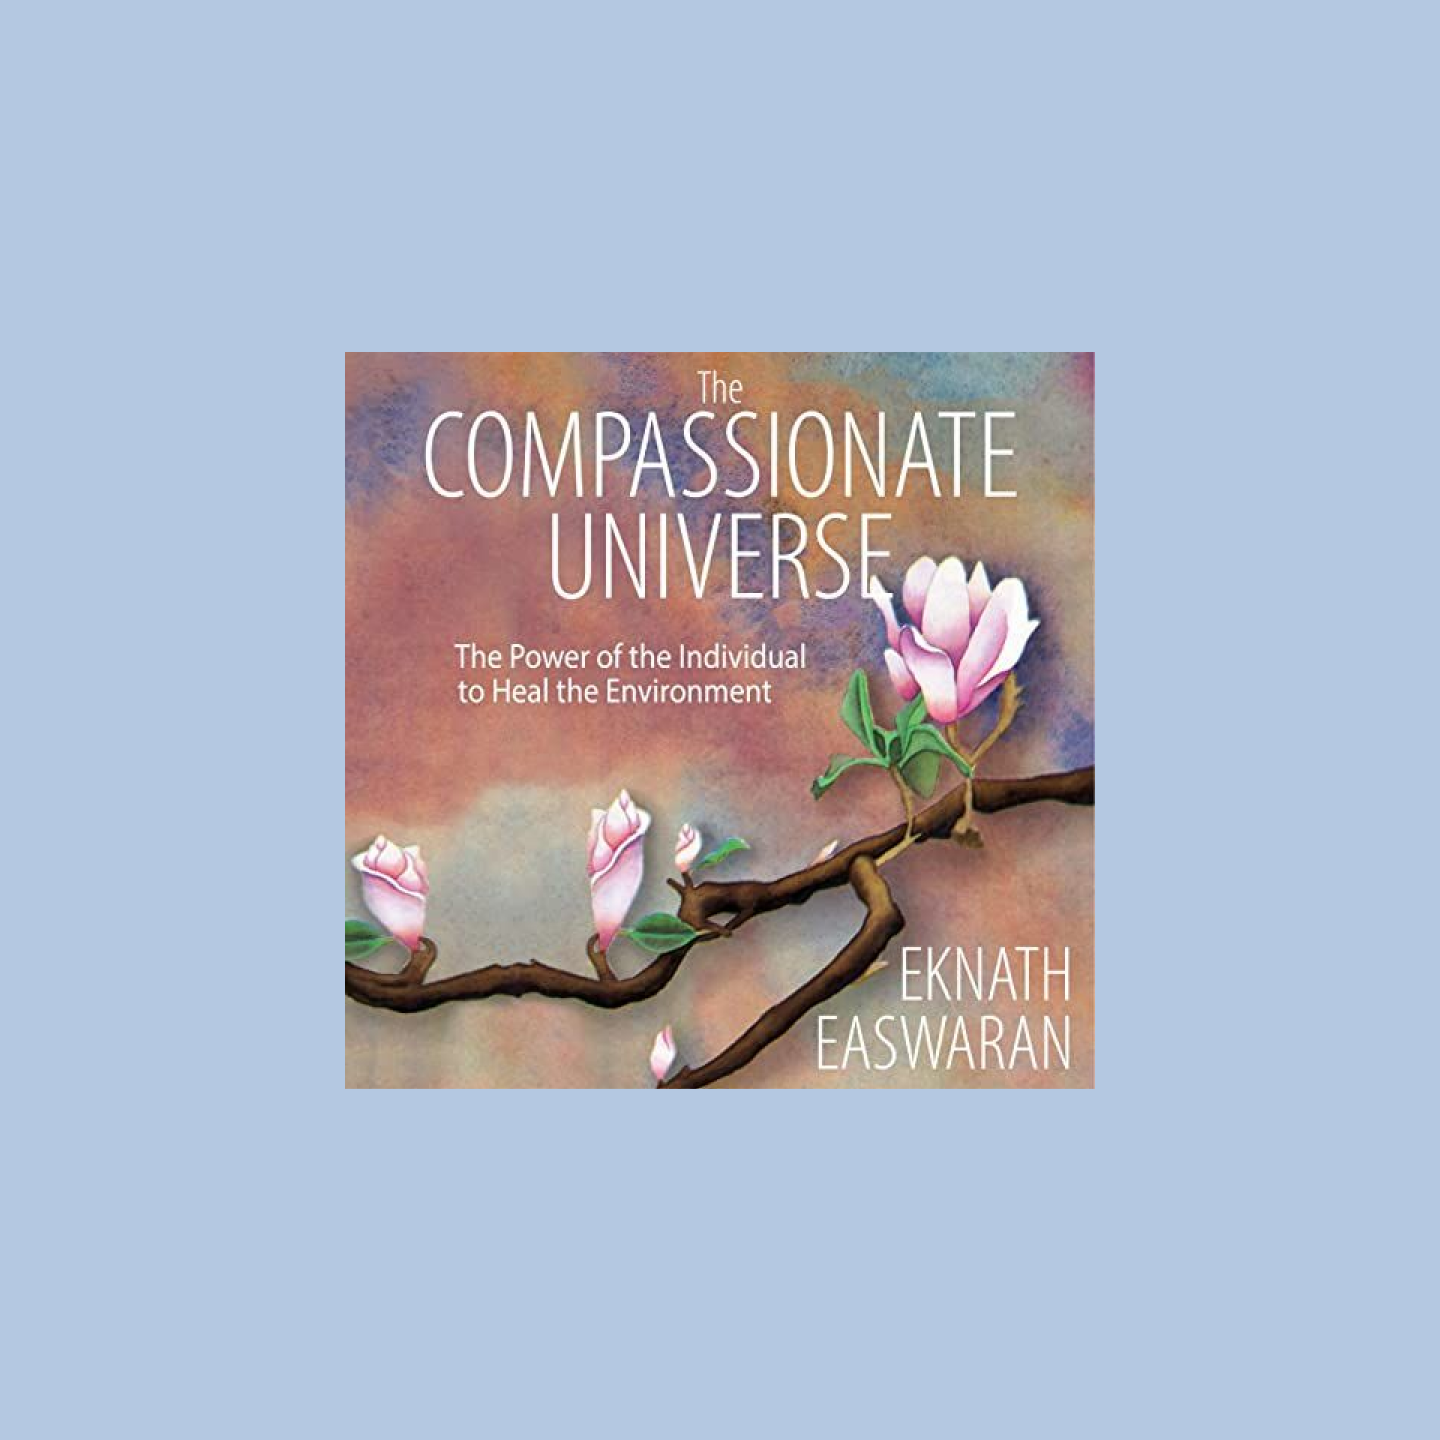 Op de omslag van het luisterboek staat The Compassionate Universe met een kersenbloesemboom